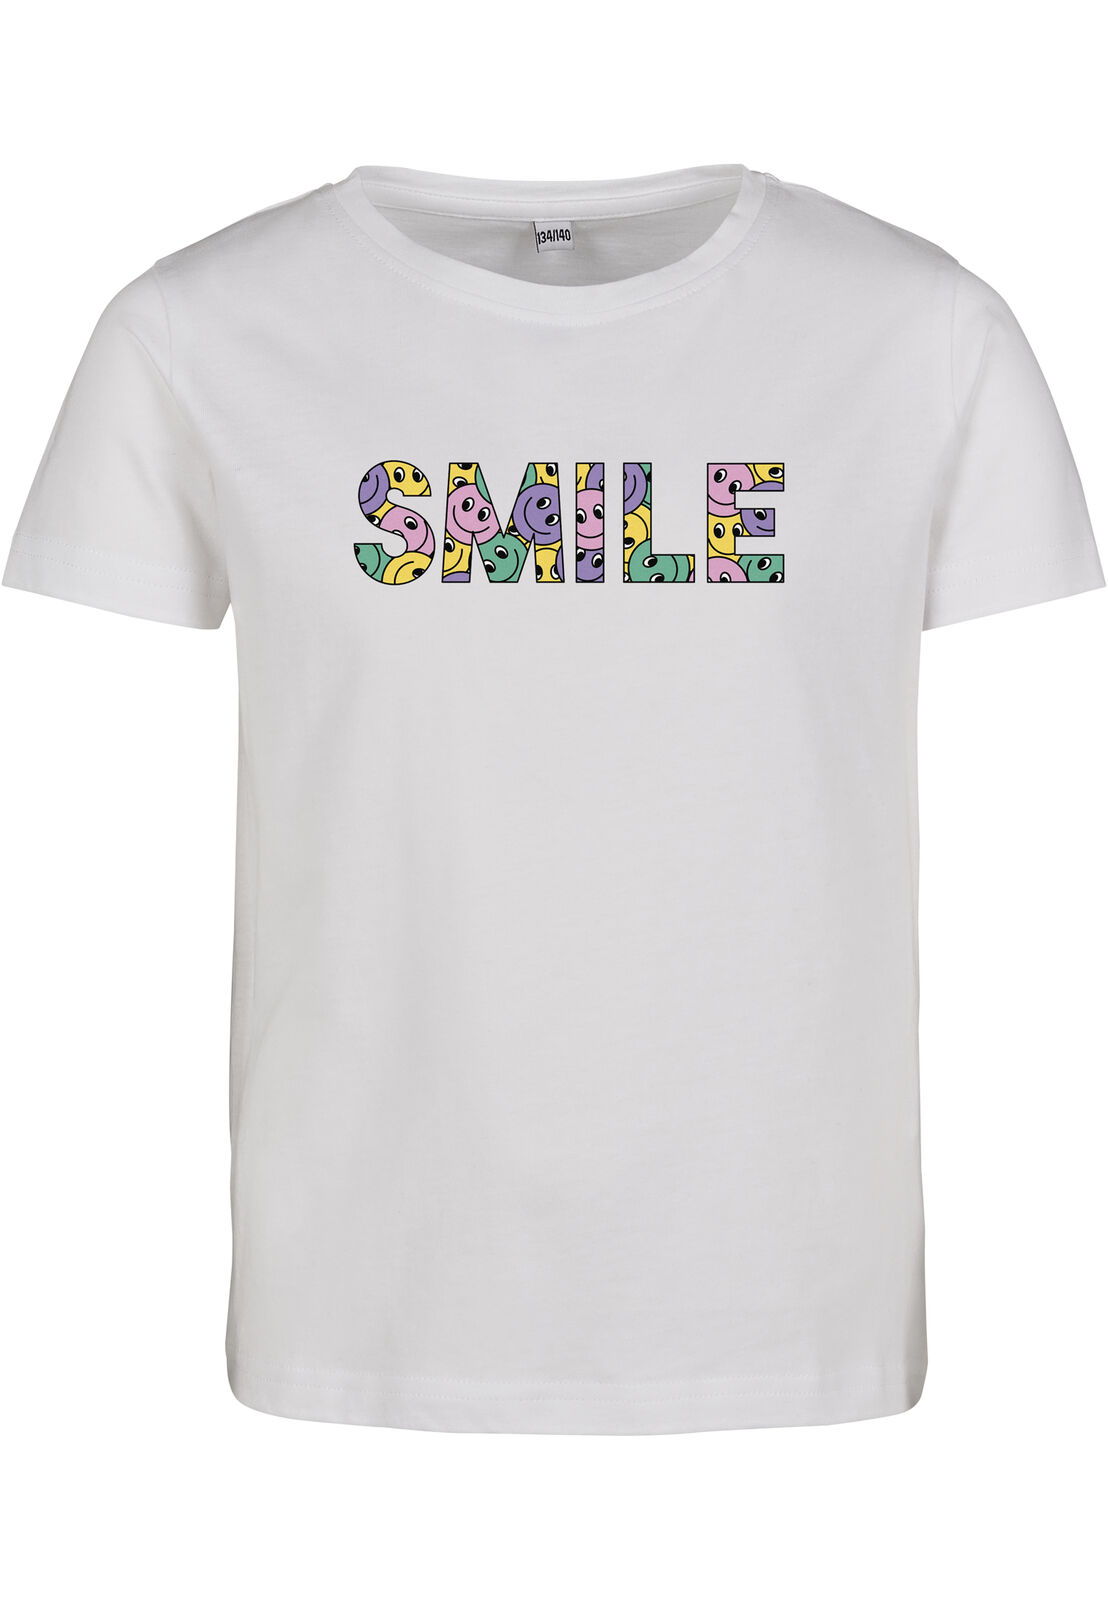 Sleeve Short Kids Colorful white T-Shirt | Smile Tee eBay Tee Mister